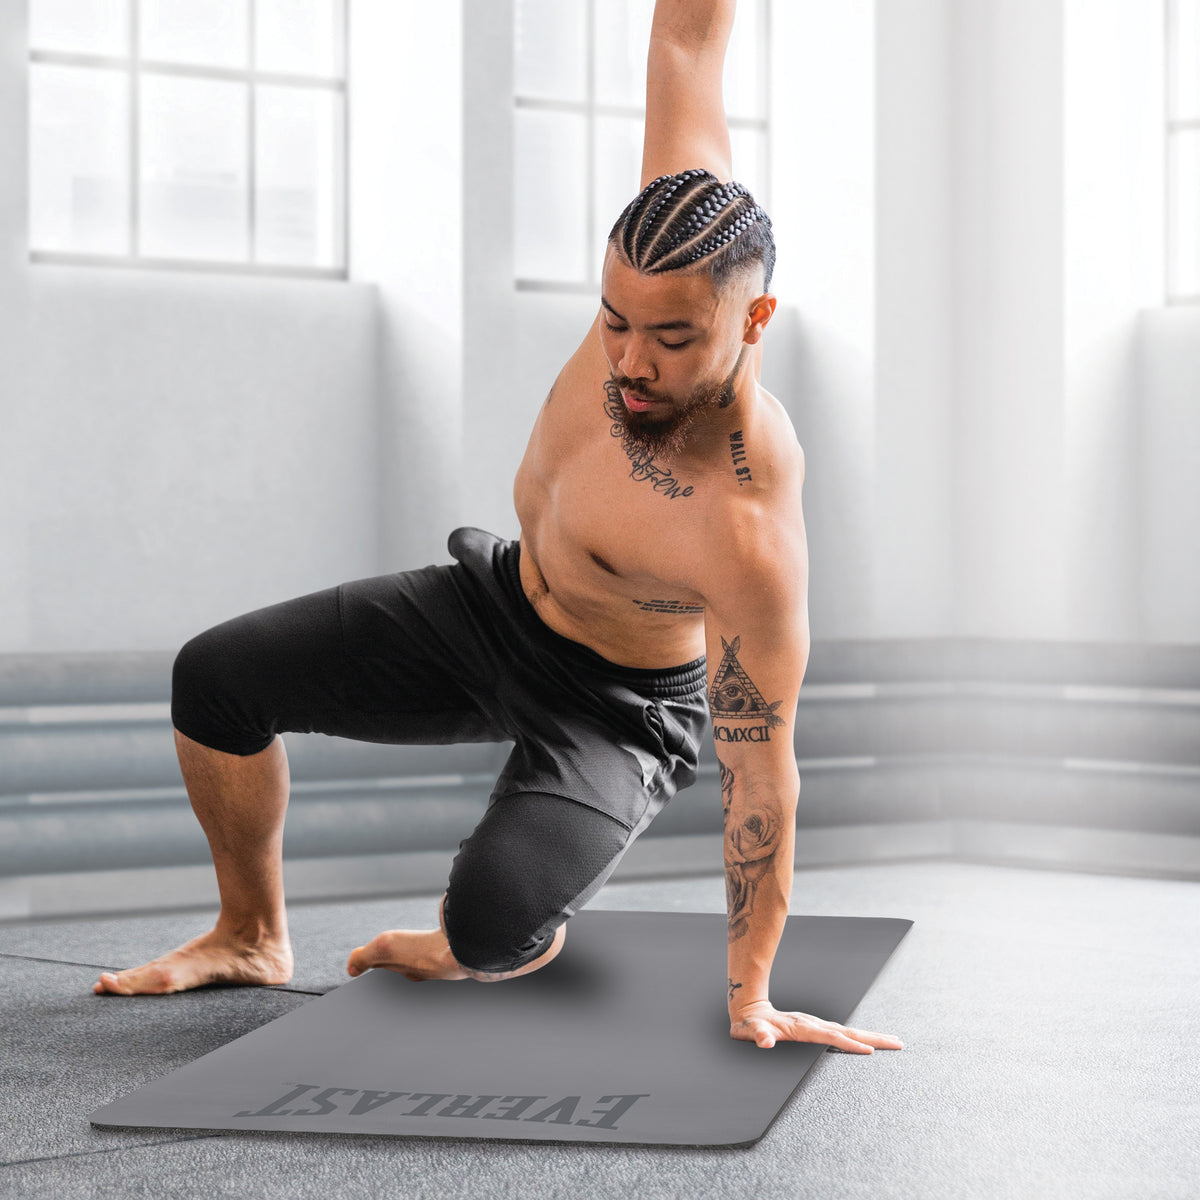 Boldfit Yoga Mats For Women yoga mat for men Exercise mat for home